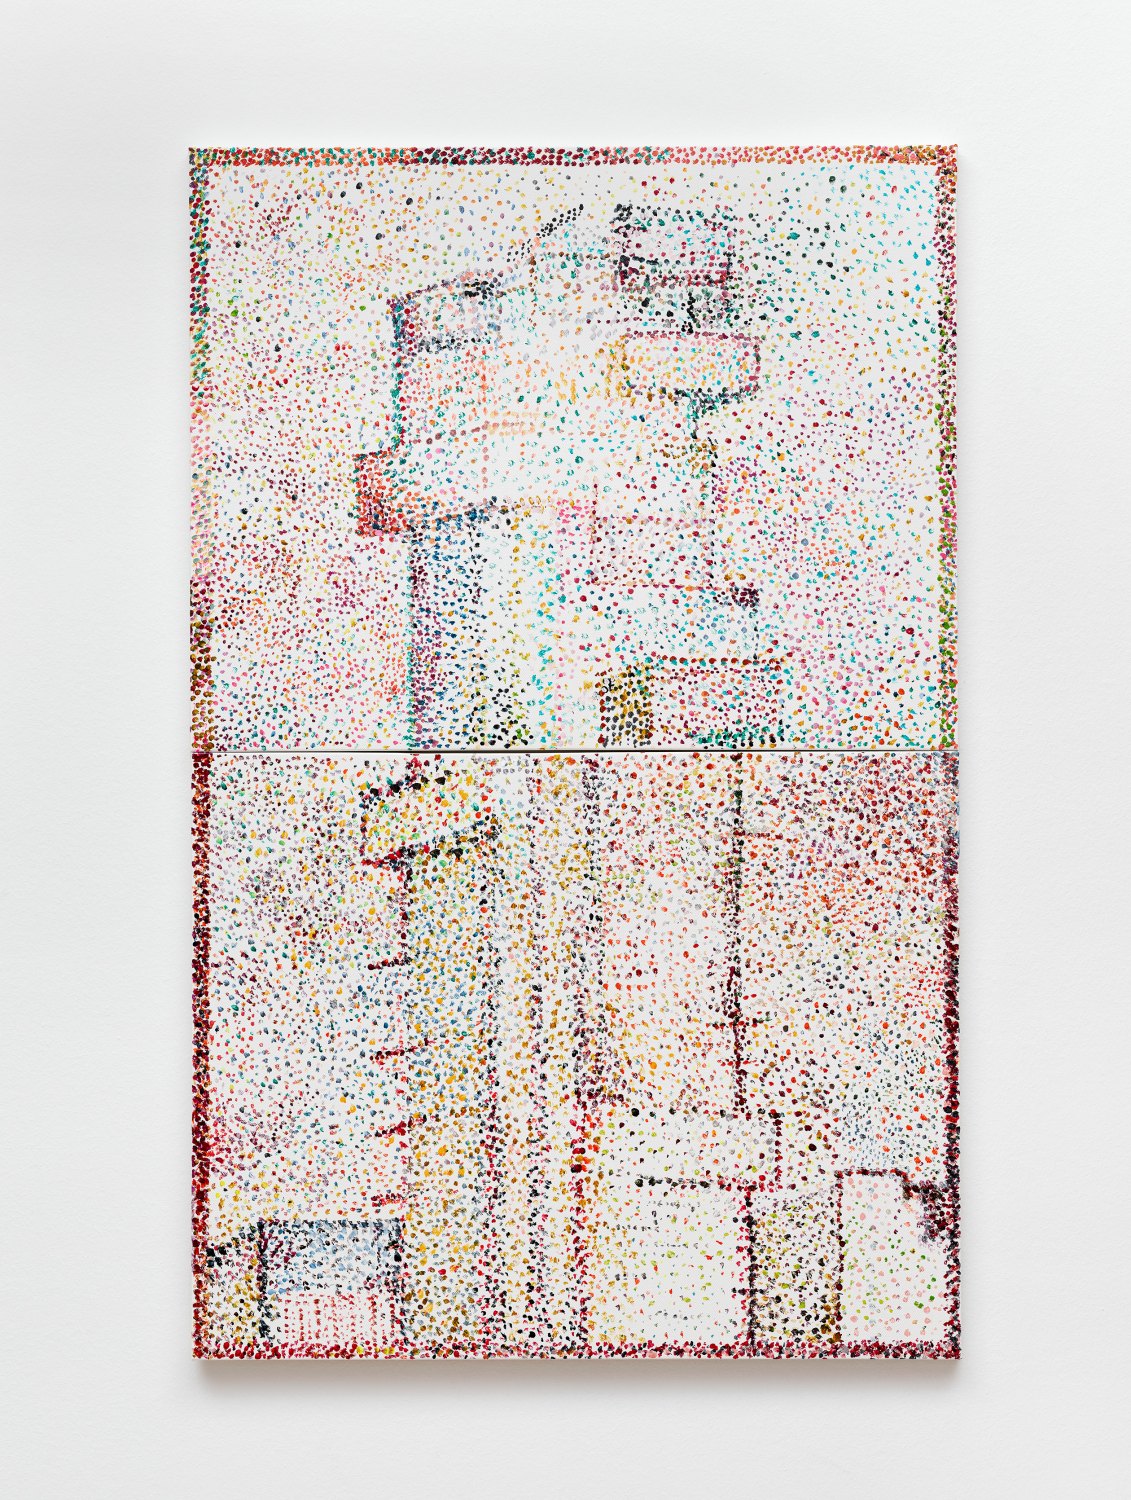 Reena Spaulings Dans la rue (56 Leonard), 2017 Acrylic on canvas, 110 x 70 cm 